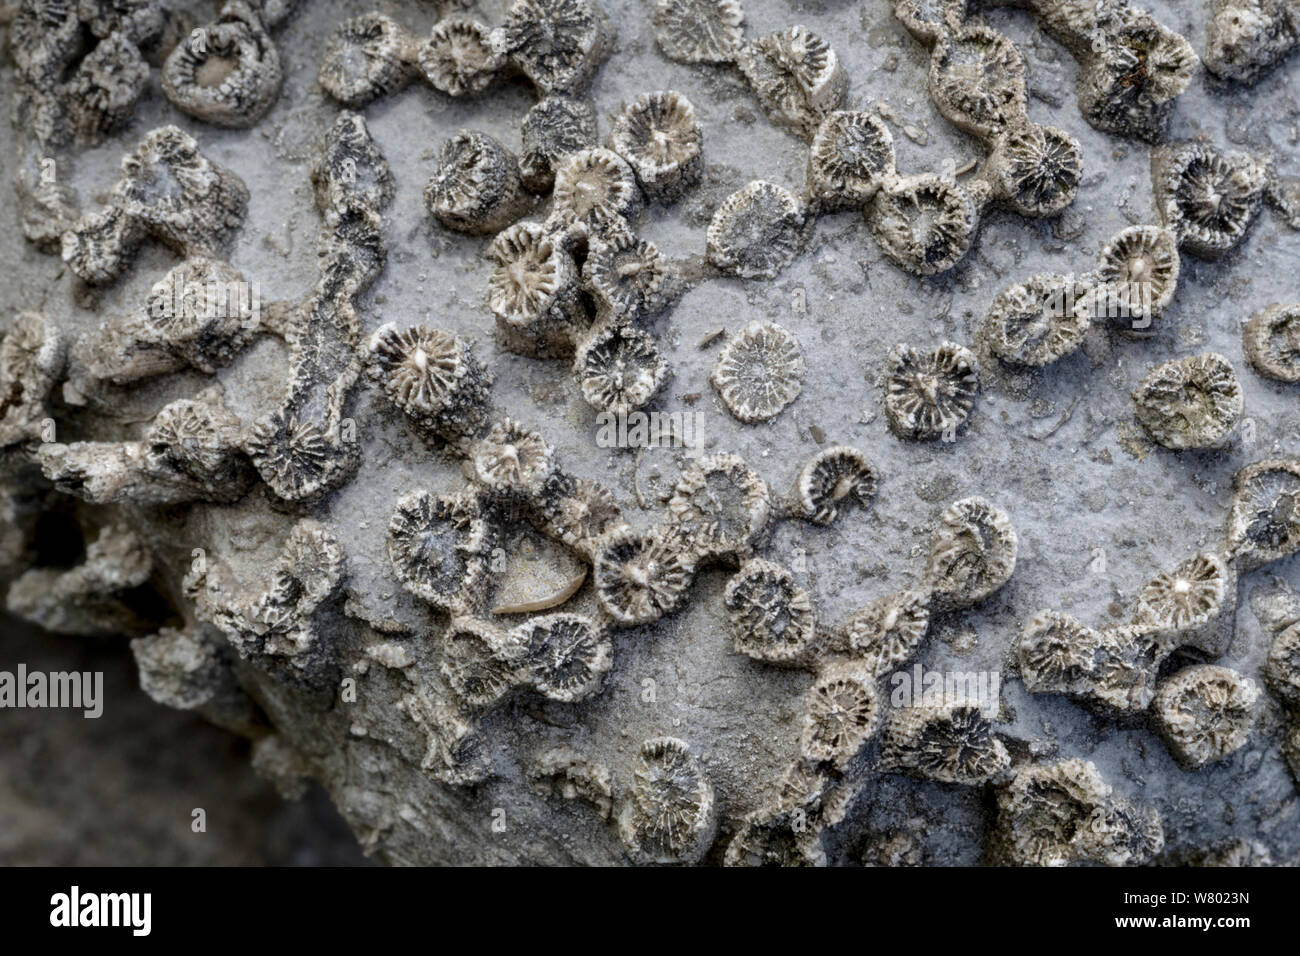 Karbon Kalkstein versteinerte Koralle (Lithostrotion sp.) Trockenmauer, Nationalpark Peak District, Derbyshire, UK. Stockfoto